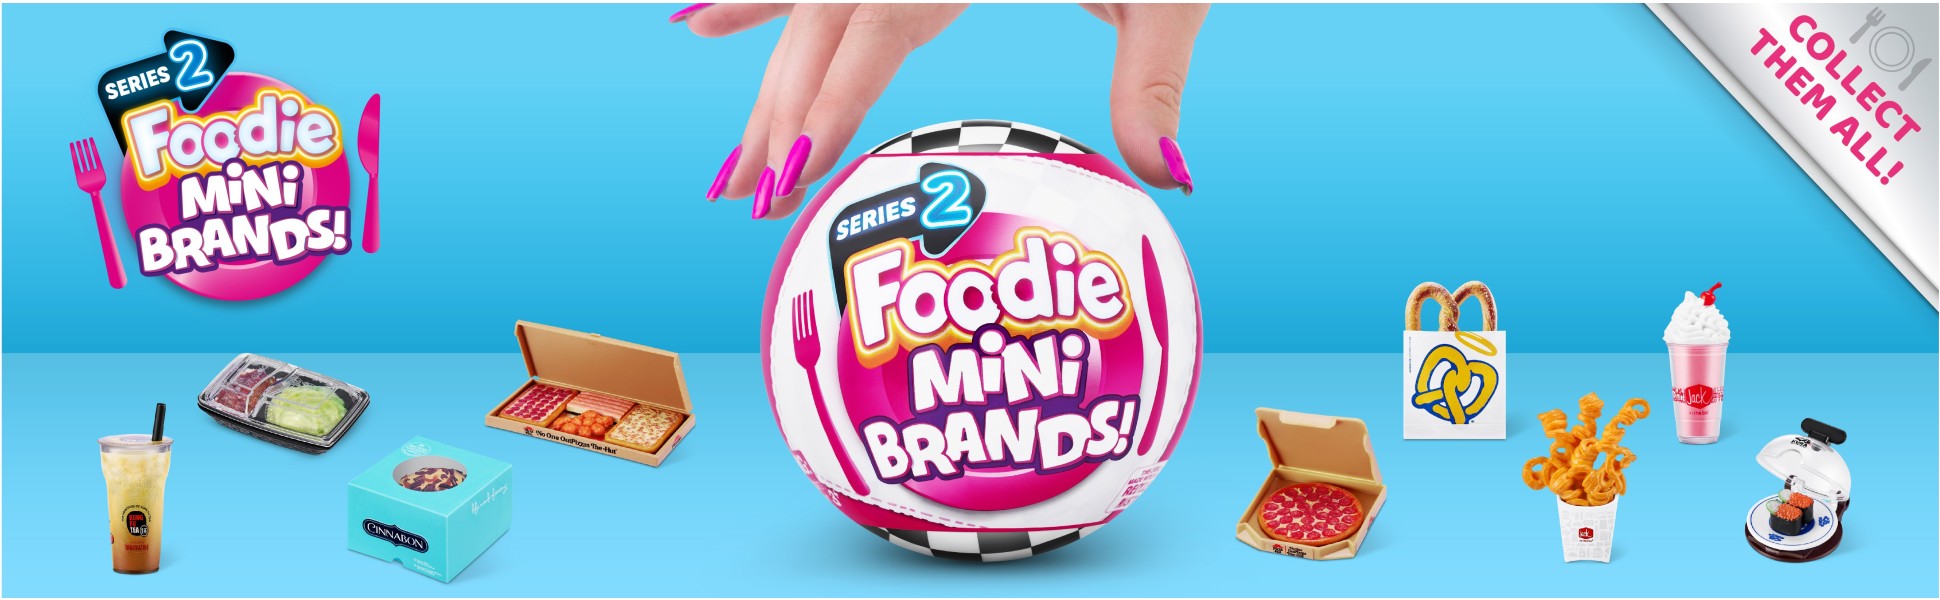 5 Surprise Foodie Mini Brands (Series 2) - Playpolis